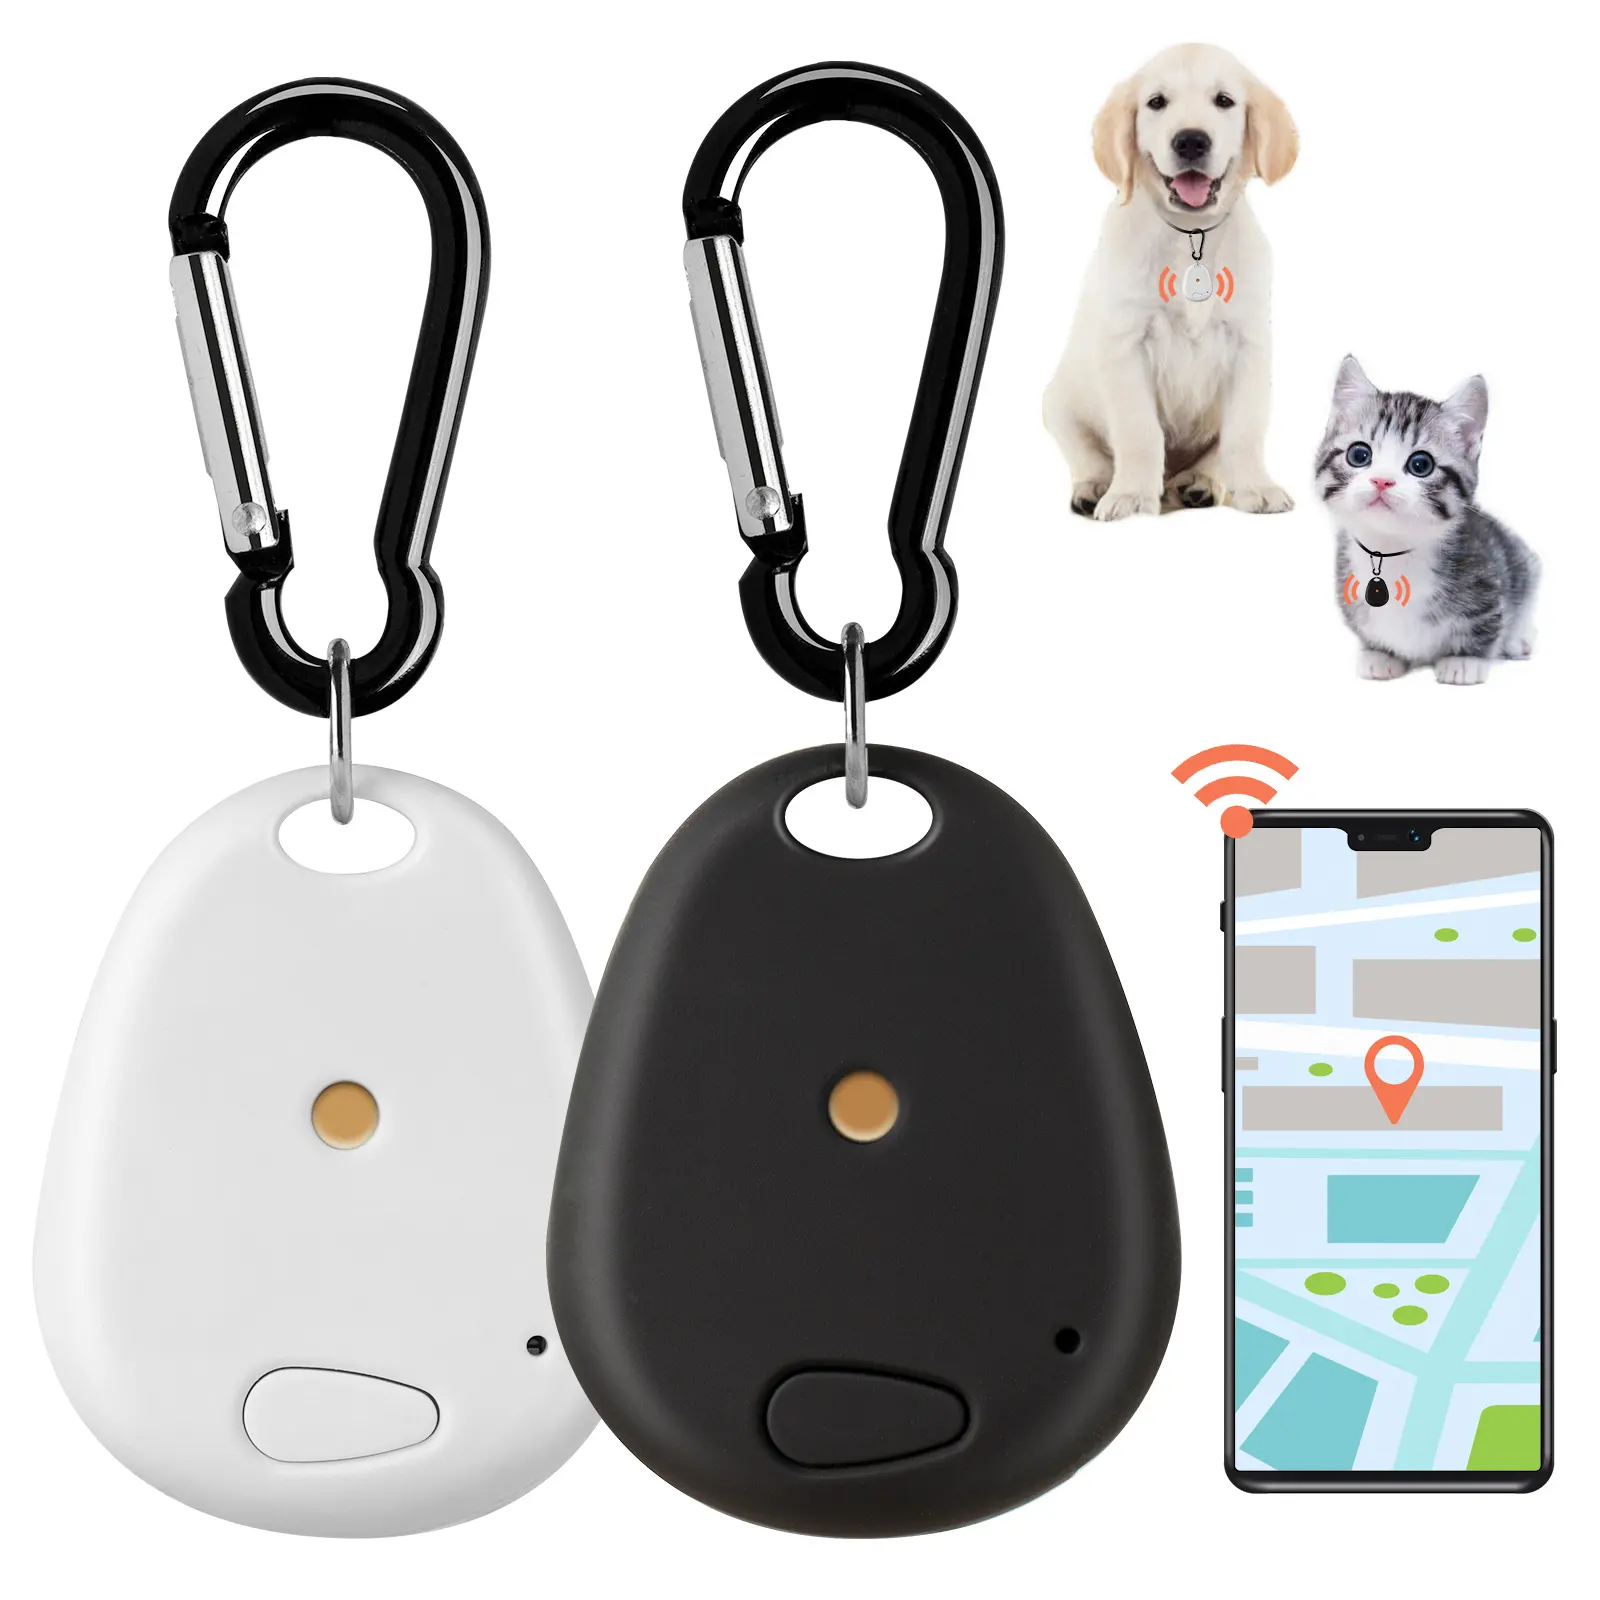 Smart Tracker wireless antifurto allarme Mini Tracker Pet bambino localizzatore anti-smarrimento elemento localizzatore per chiavi, borse